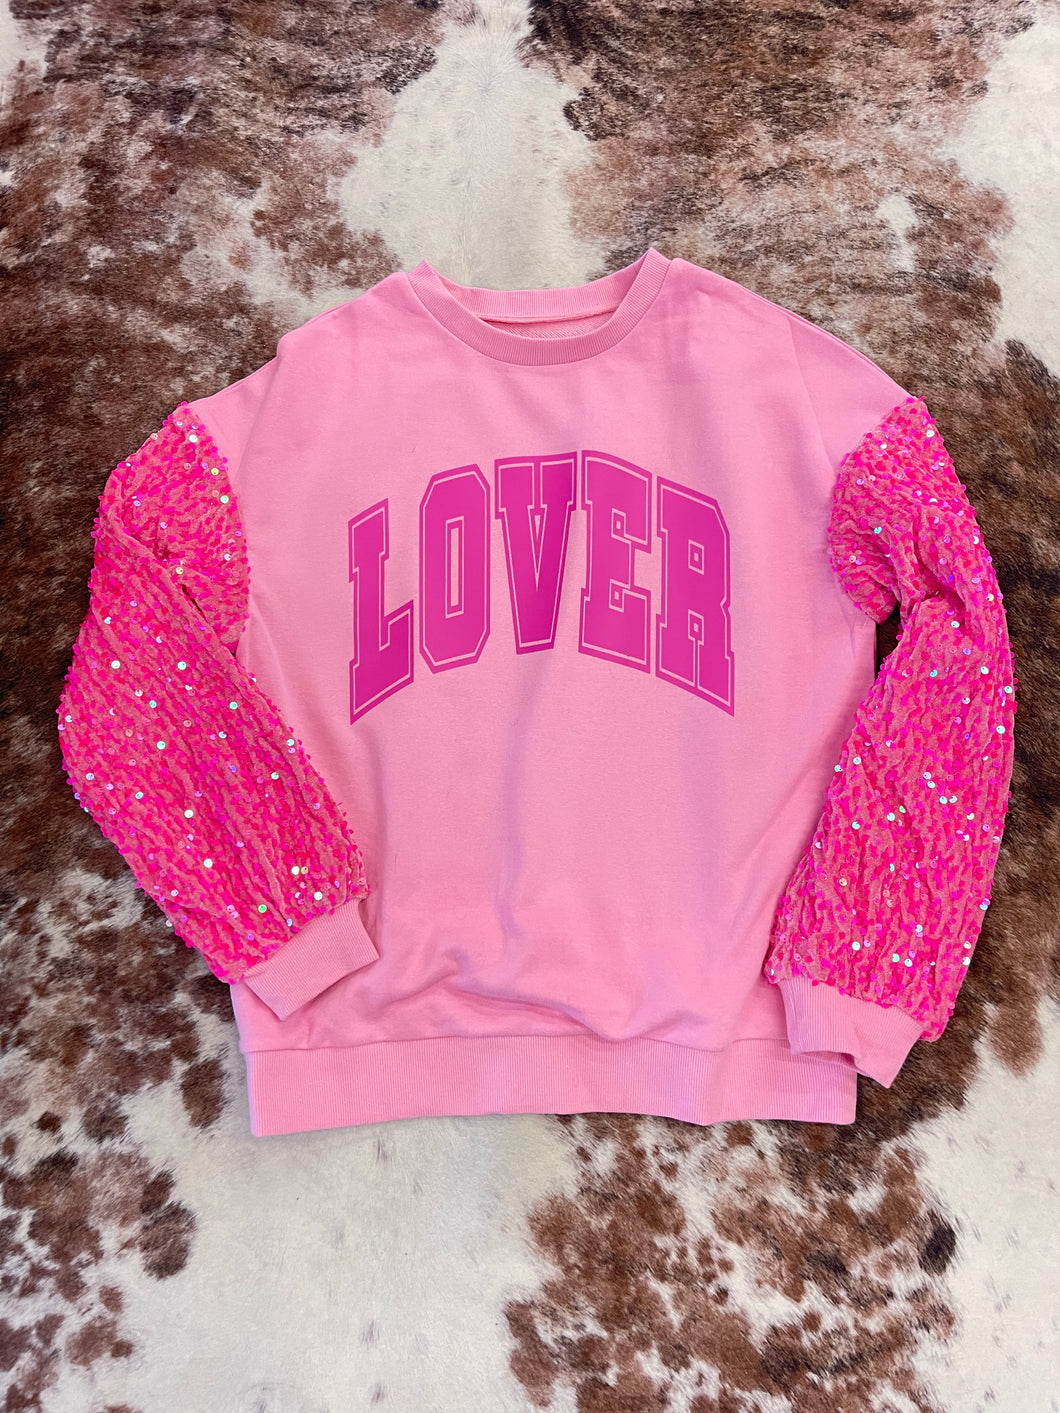 “Lover” Sequin Sleeve Sweatshirt